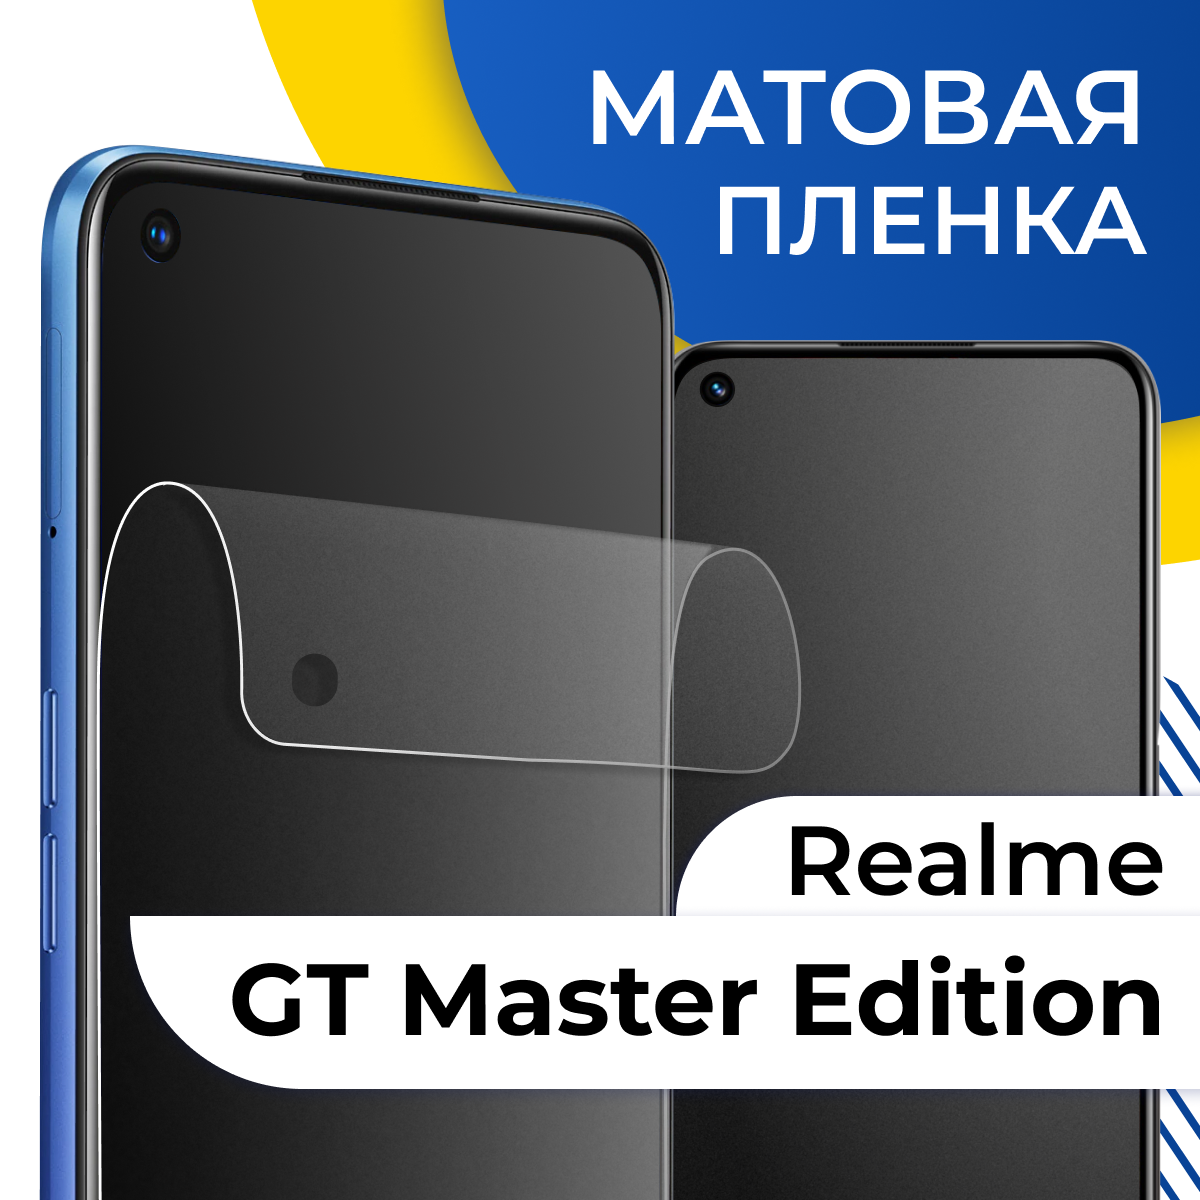 Матовая гидрогелевая пленка для телефона Realme GT Master Edition / Самовосстанавливающаяся защитная пленка на Реалми ГТ Мастер Эдишн